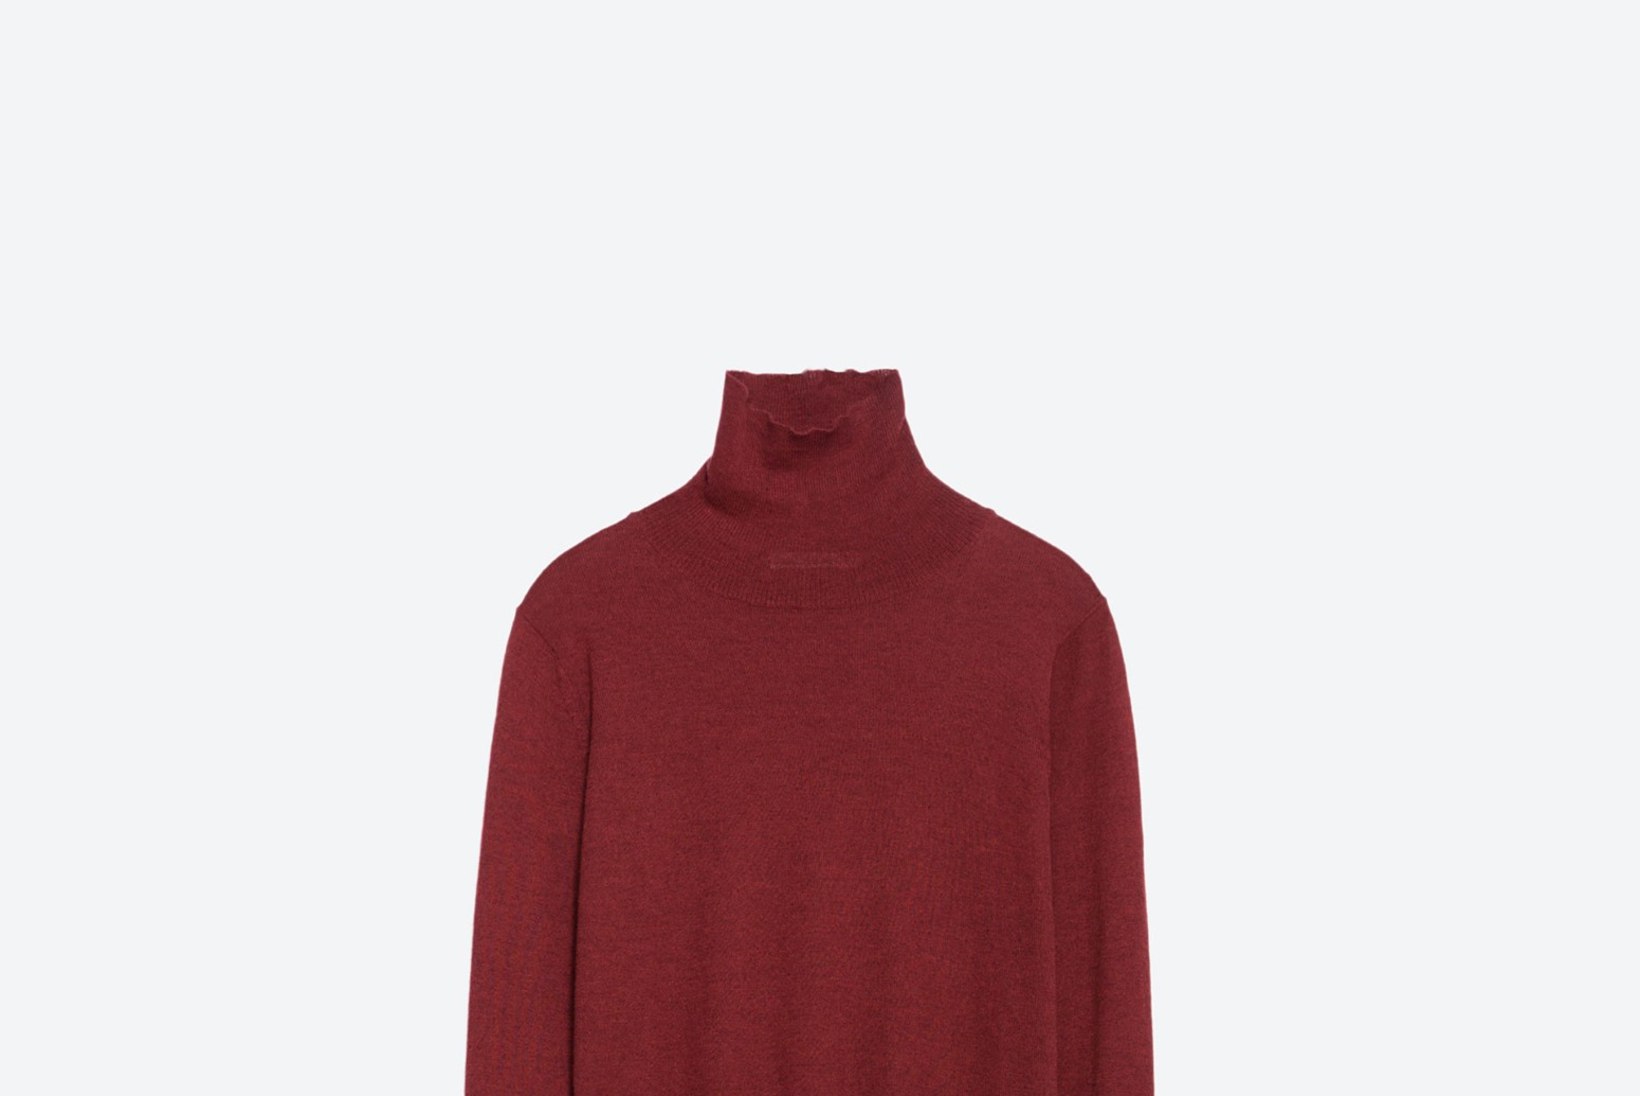 Kõrge kaelusega džemper – alahinnatud garderoobiklassik